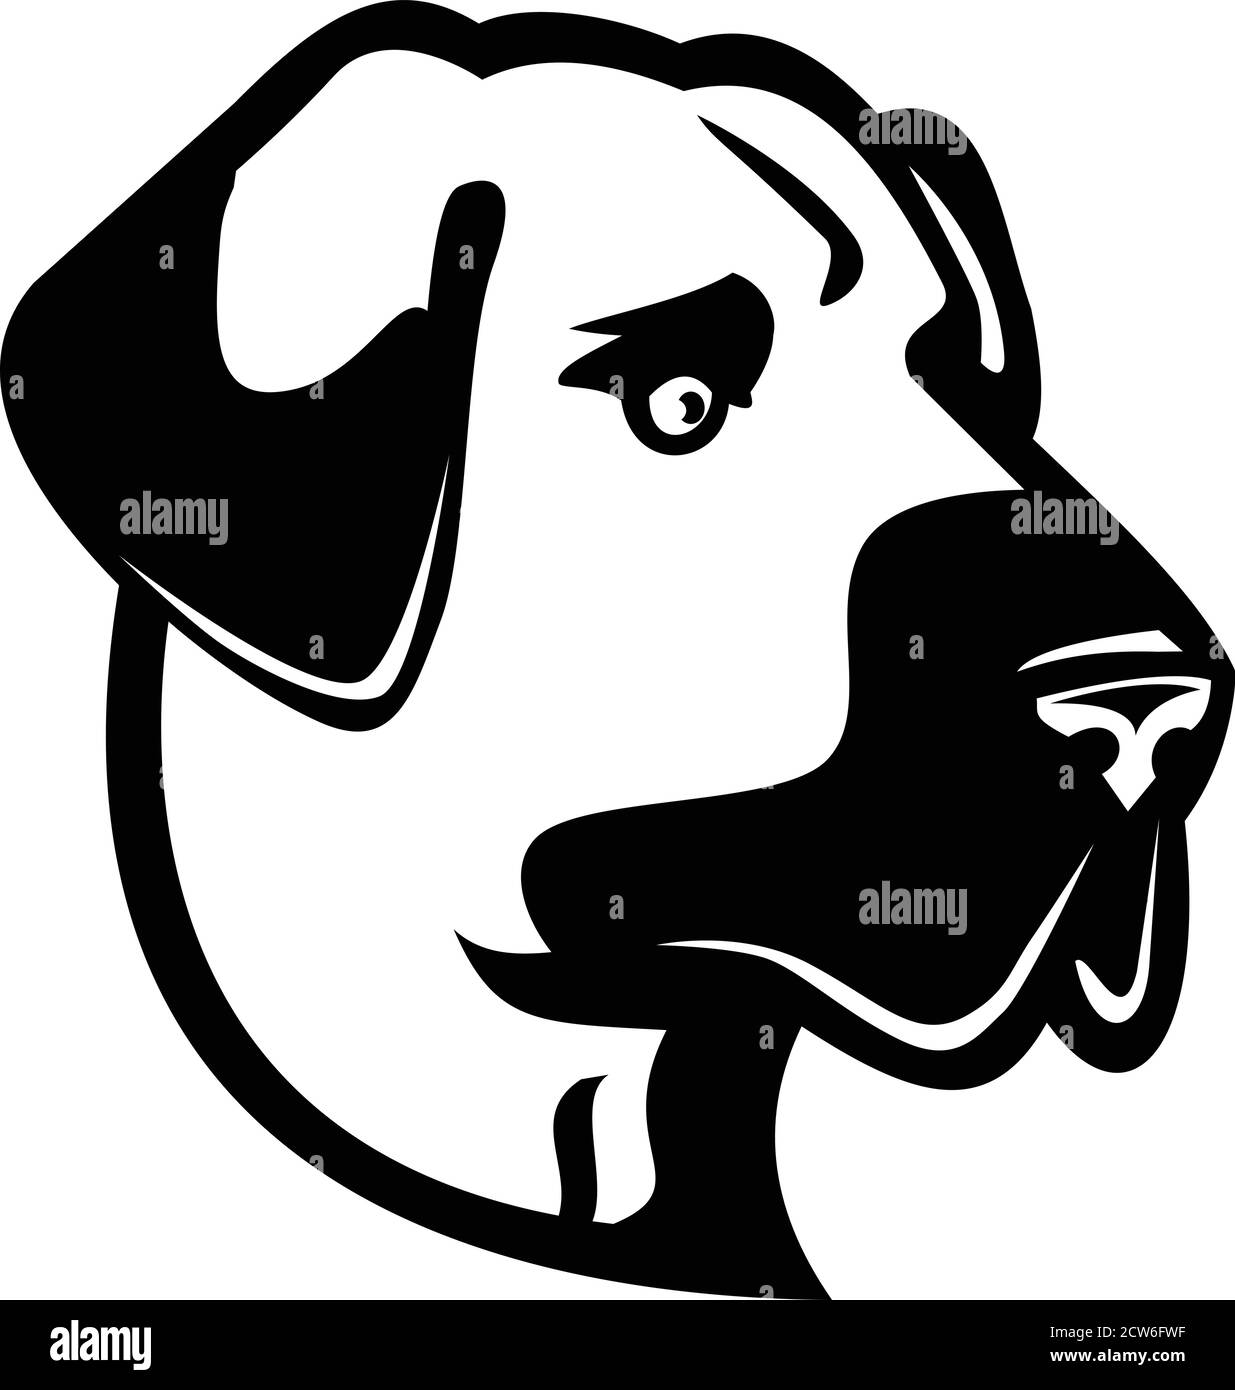 Schwarz-weißes Maskottchen Abbildung des Kopfes eines anatolischen Schäferhundes, anatolischen Schwarzkopf oder Kangal, ein Tierschutzhund von der Seite an gesehen Stock Vektor